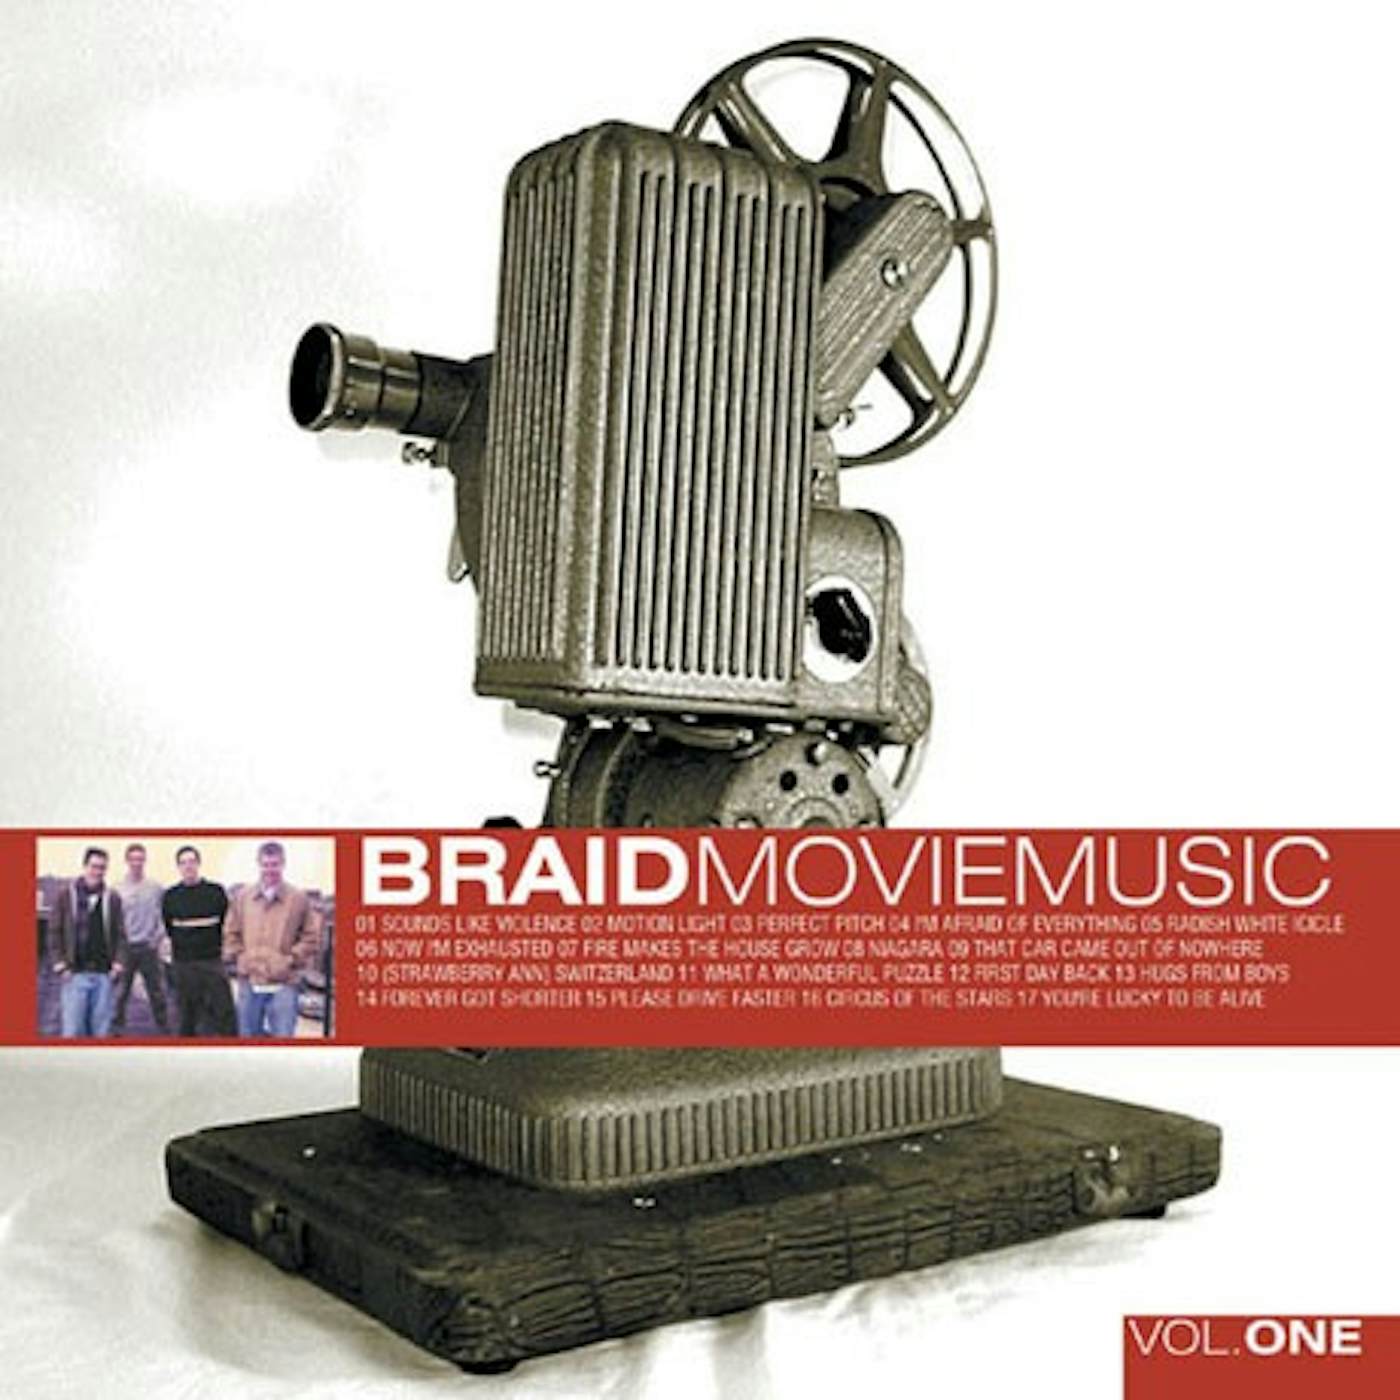 Braid Movie Music Vol. 1